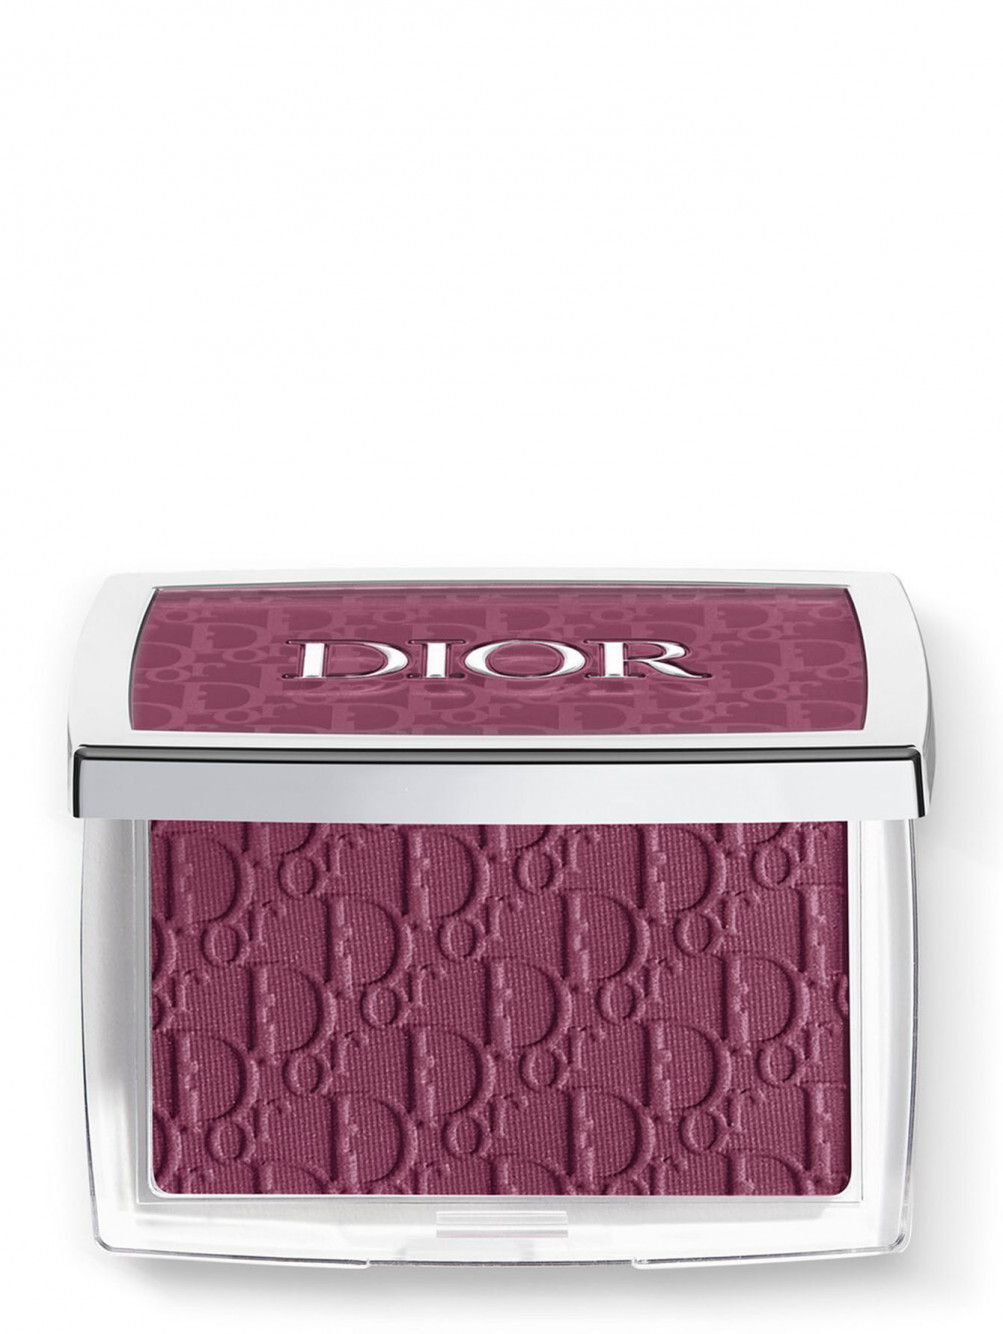 Румяна для лица Dior Backstage Rosy Glow, 006 Ягодный, 4,4 г - Общий вид